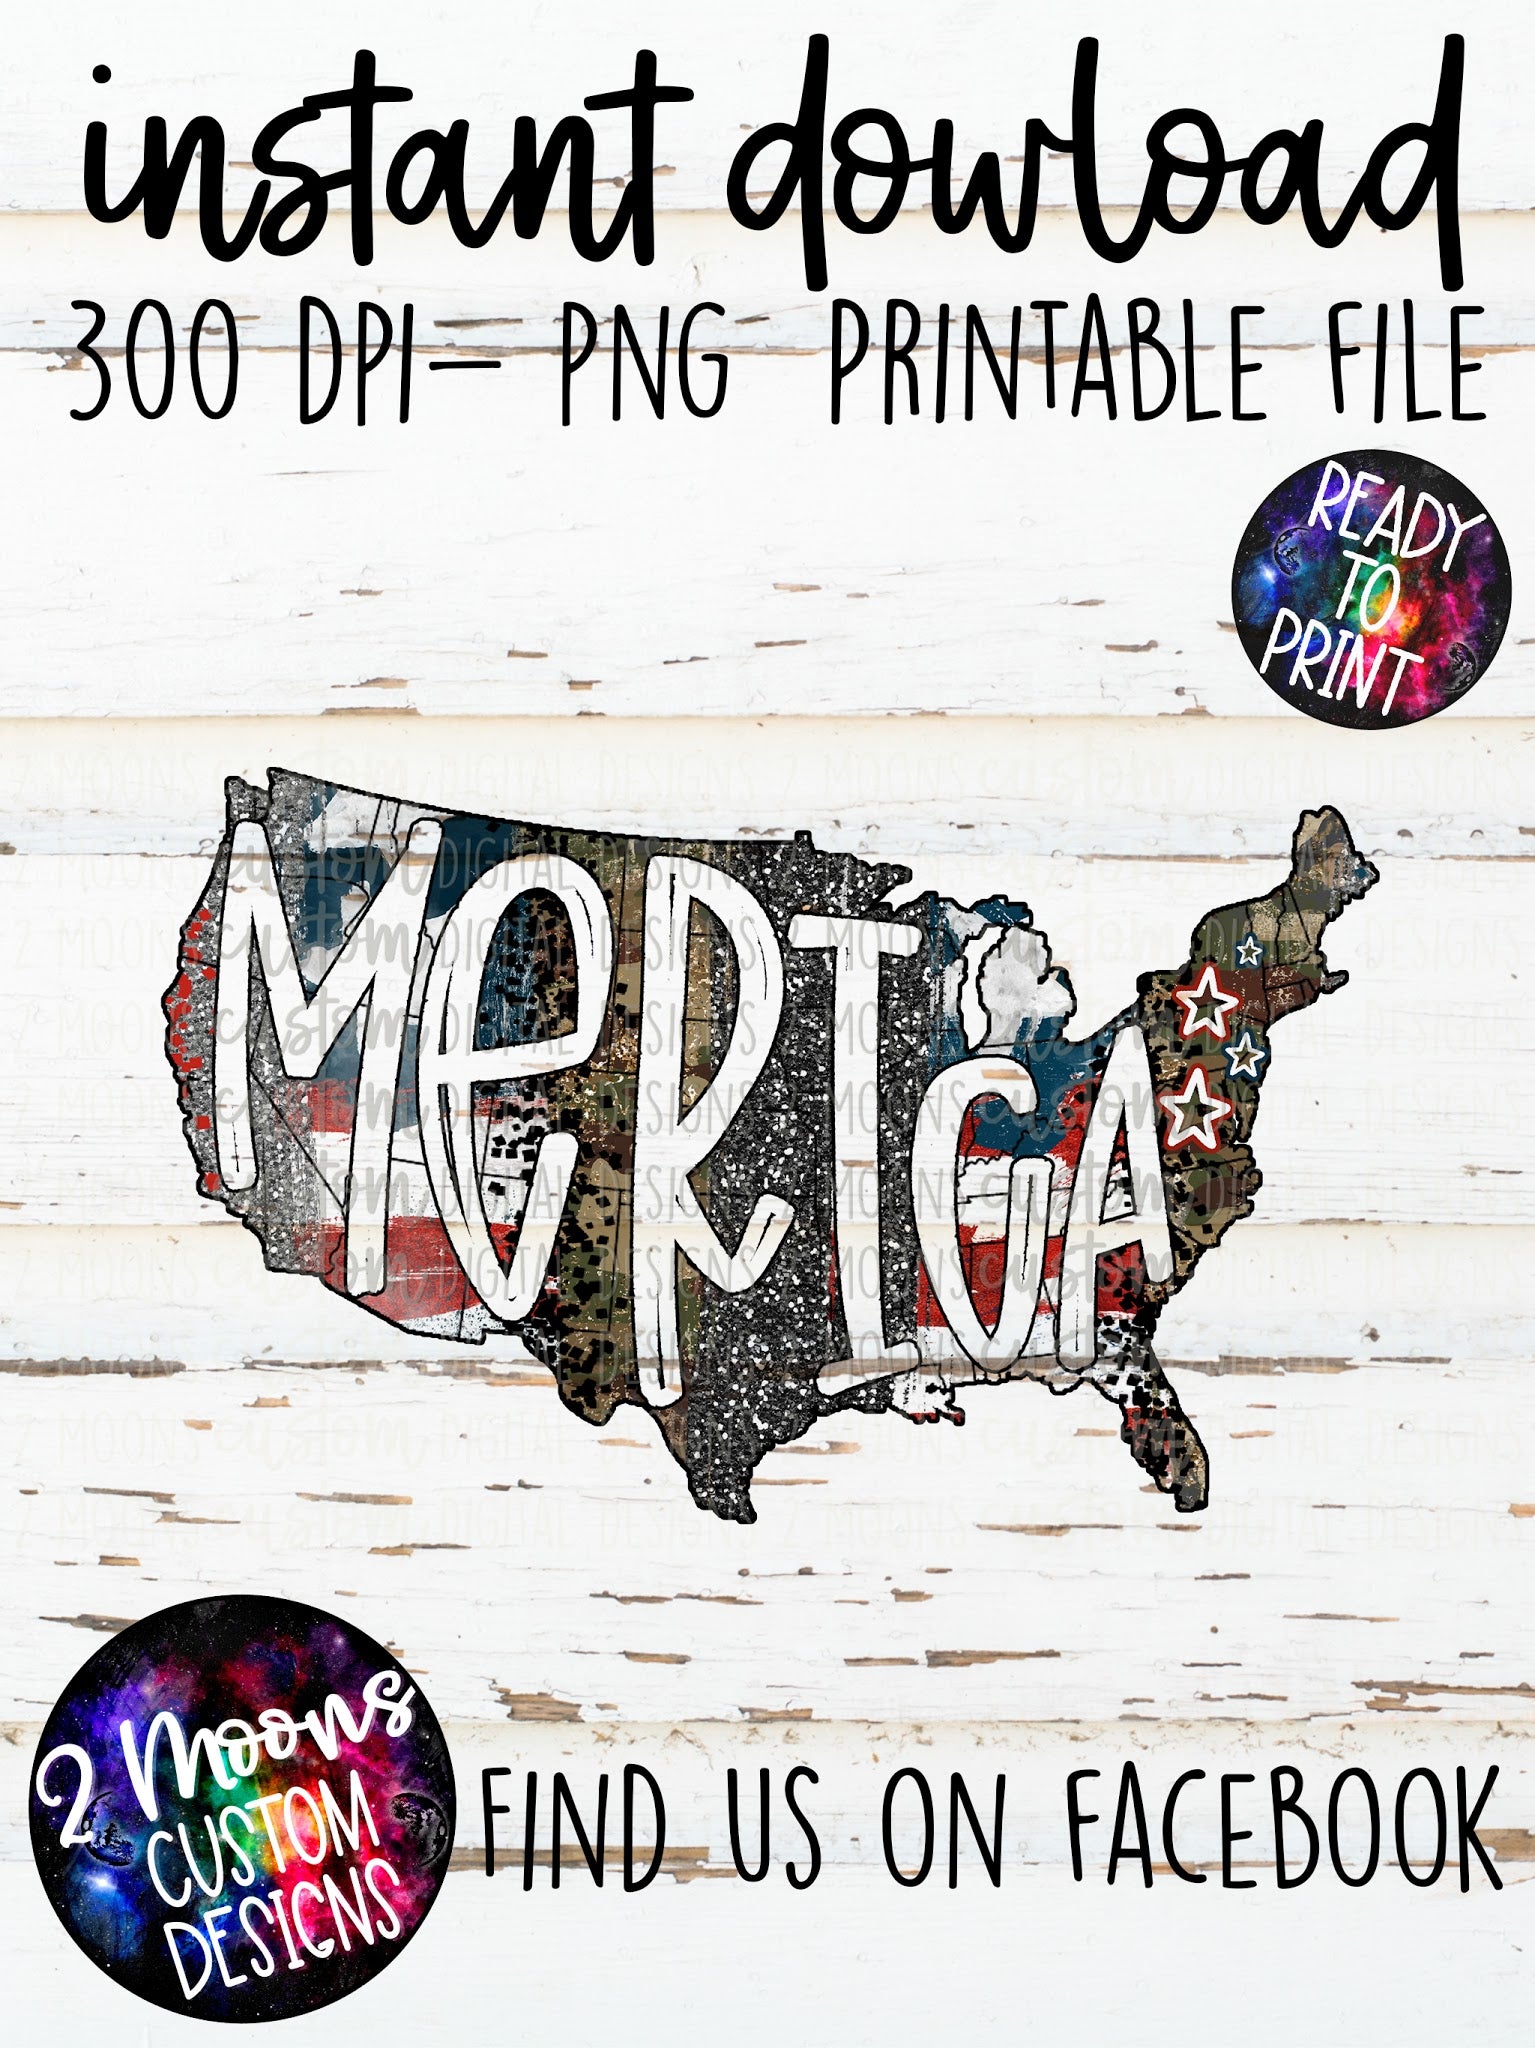 Merica - USA - Brushstrokes - Handlettered